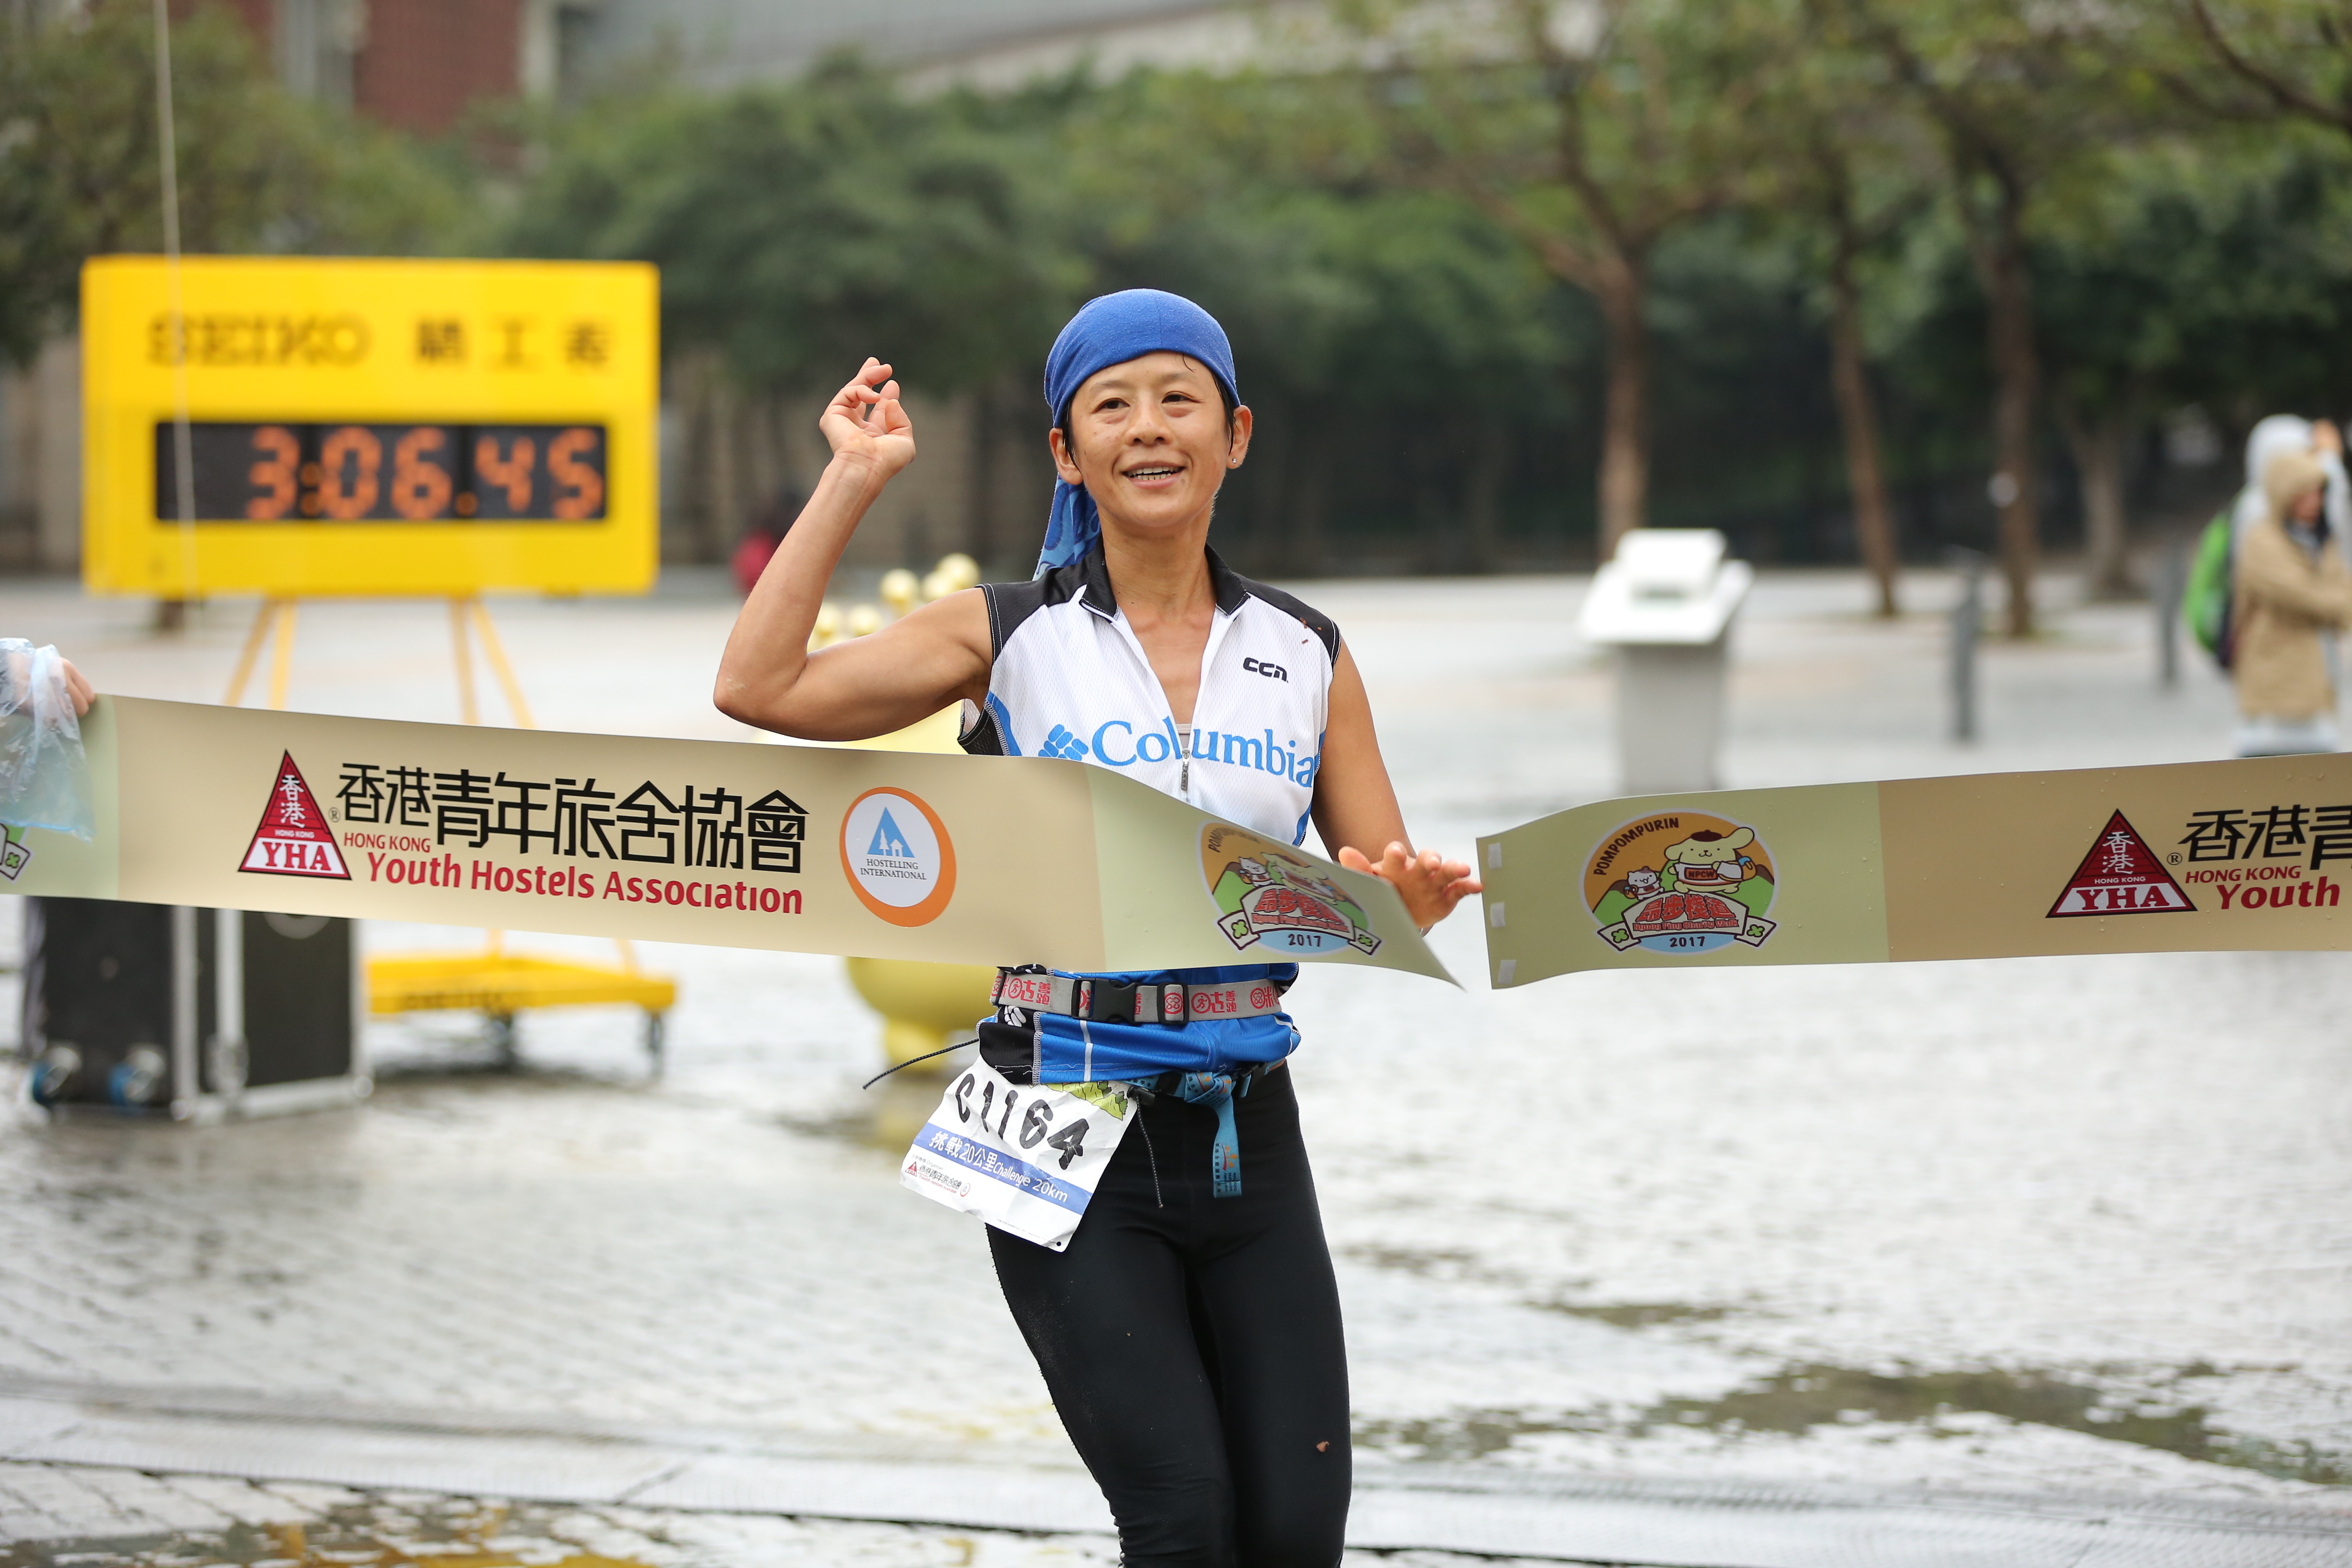 「挑战20公里」女子个人冠军Lam Lai Po大幅抛离对手，比第二名快足足一小时冲过终点。